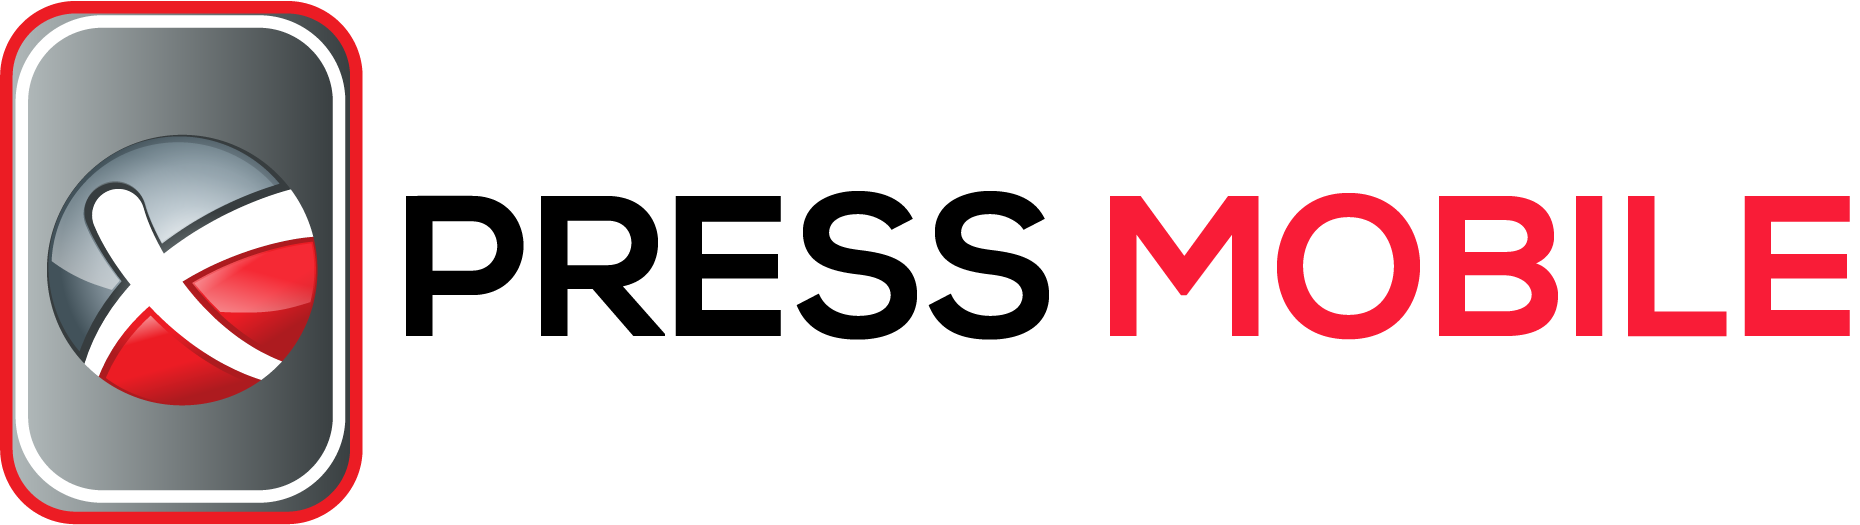 Xpress Mobile logo